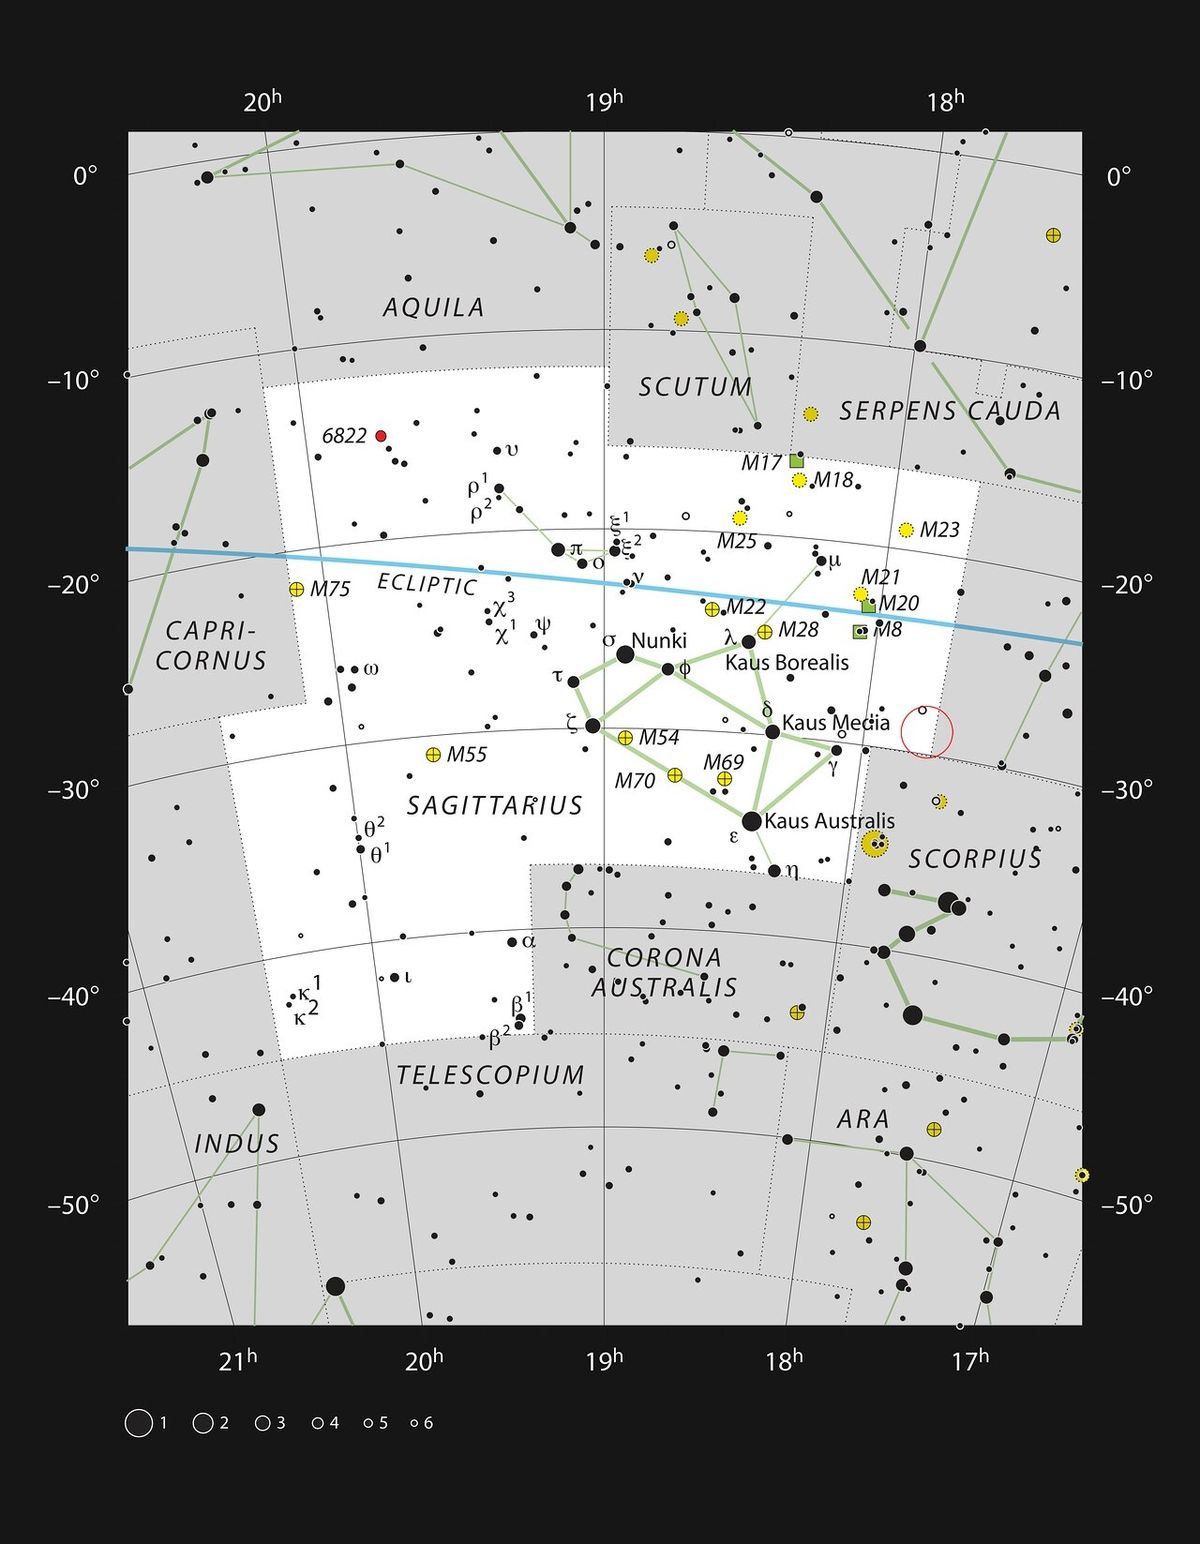 Mapka zachycuje polohu středu Galaxie na obloze. Střed Mléčné dráhy se nachází v souhvězdí Střelce, na mapce je vyznačen červeným kroužkem. Vyobrazena je většina hvězd viditelných pouhým okem na tmavé bezoblačné obloze.